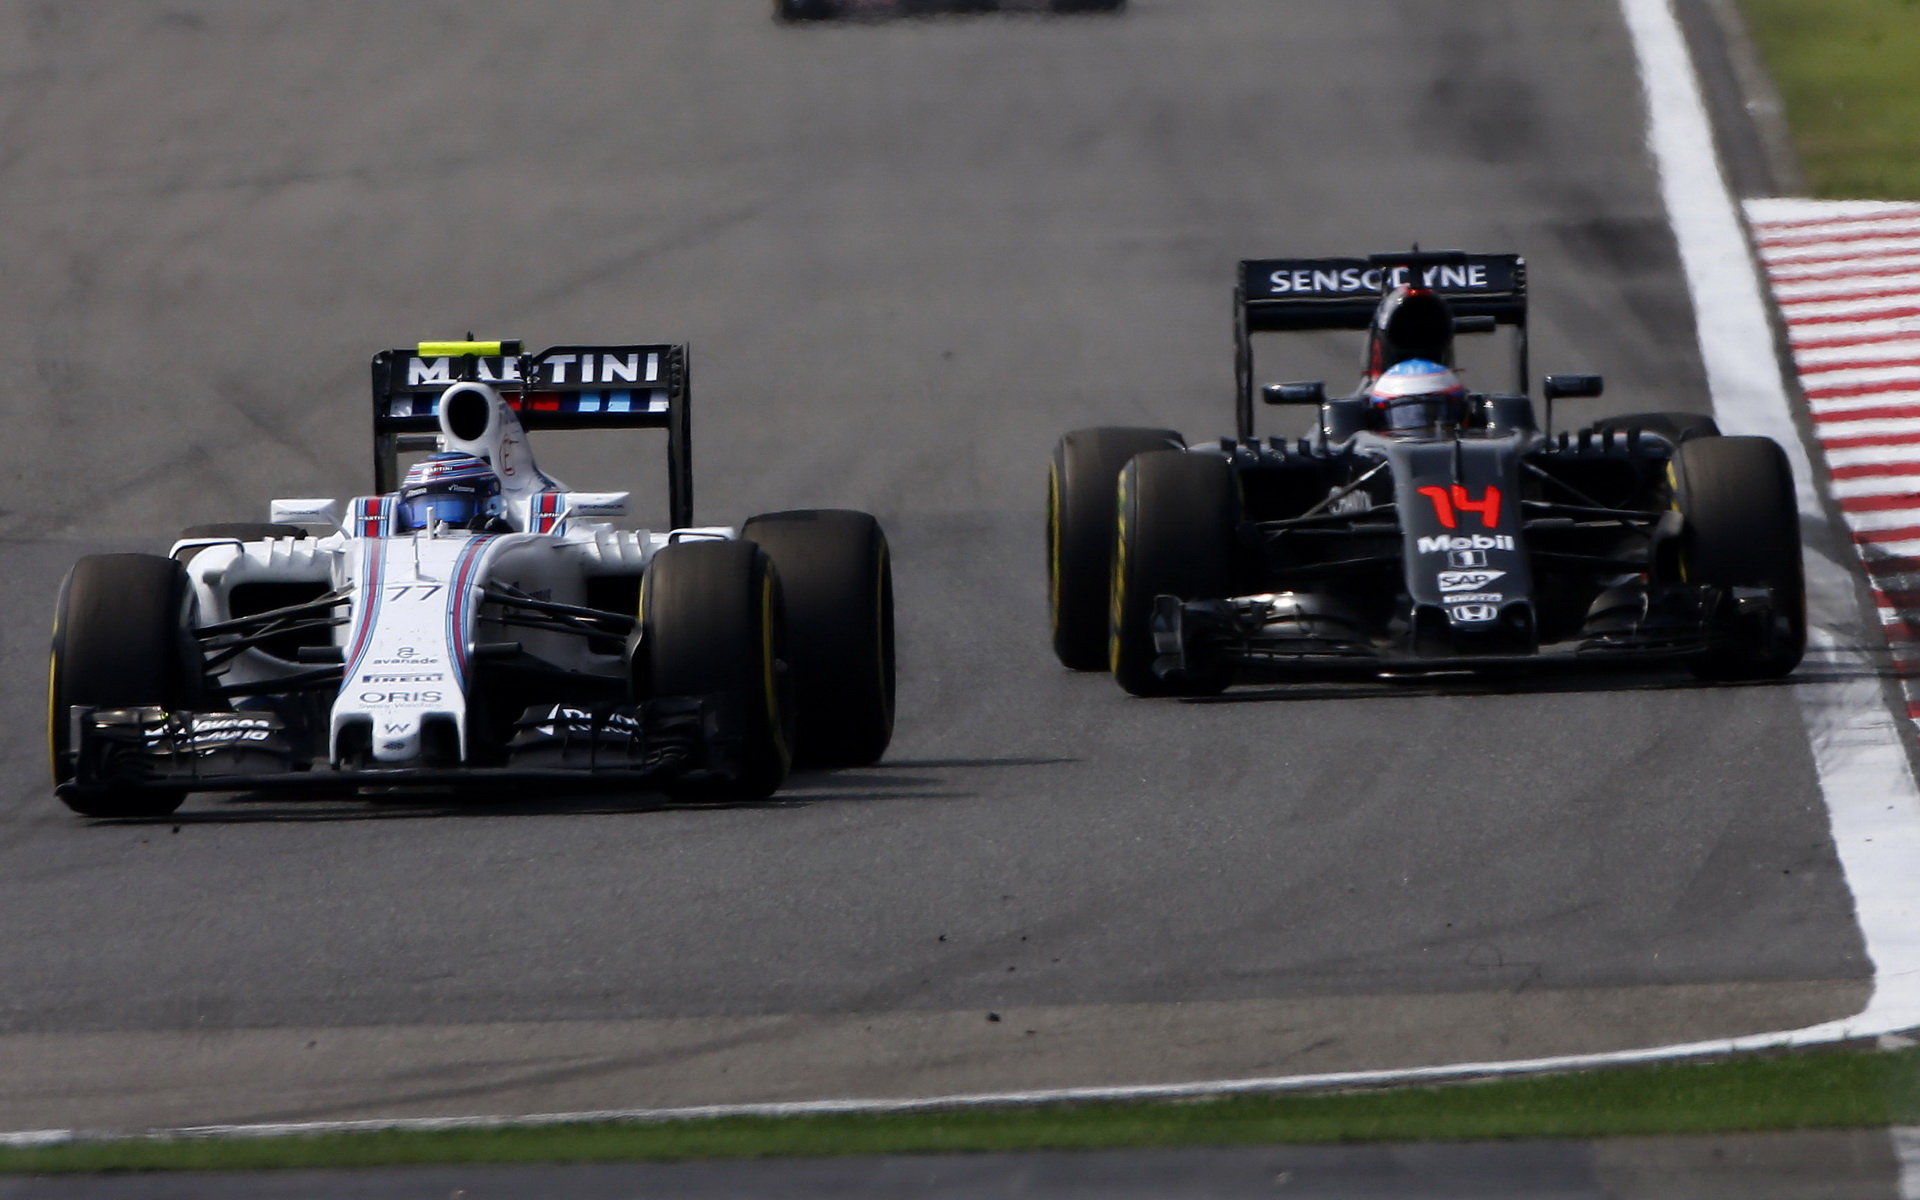 Valtteri Bottas a Fernando Alonso v závodě v Číně